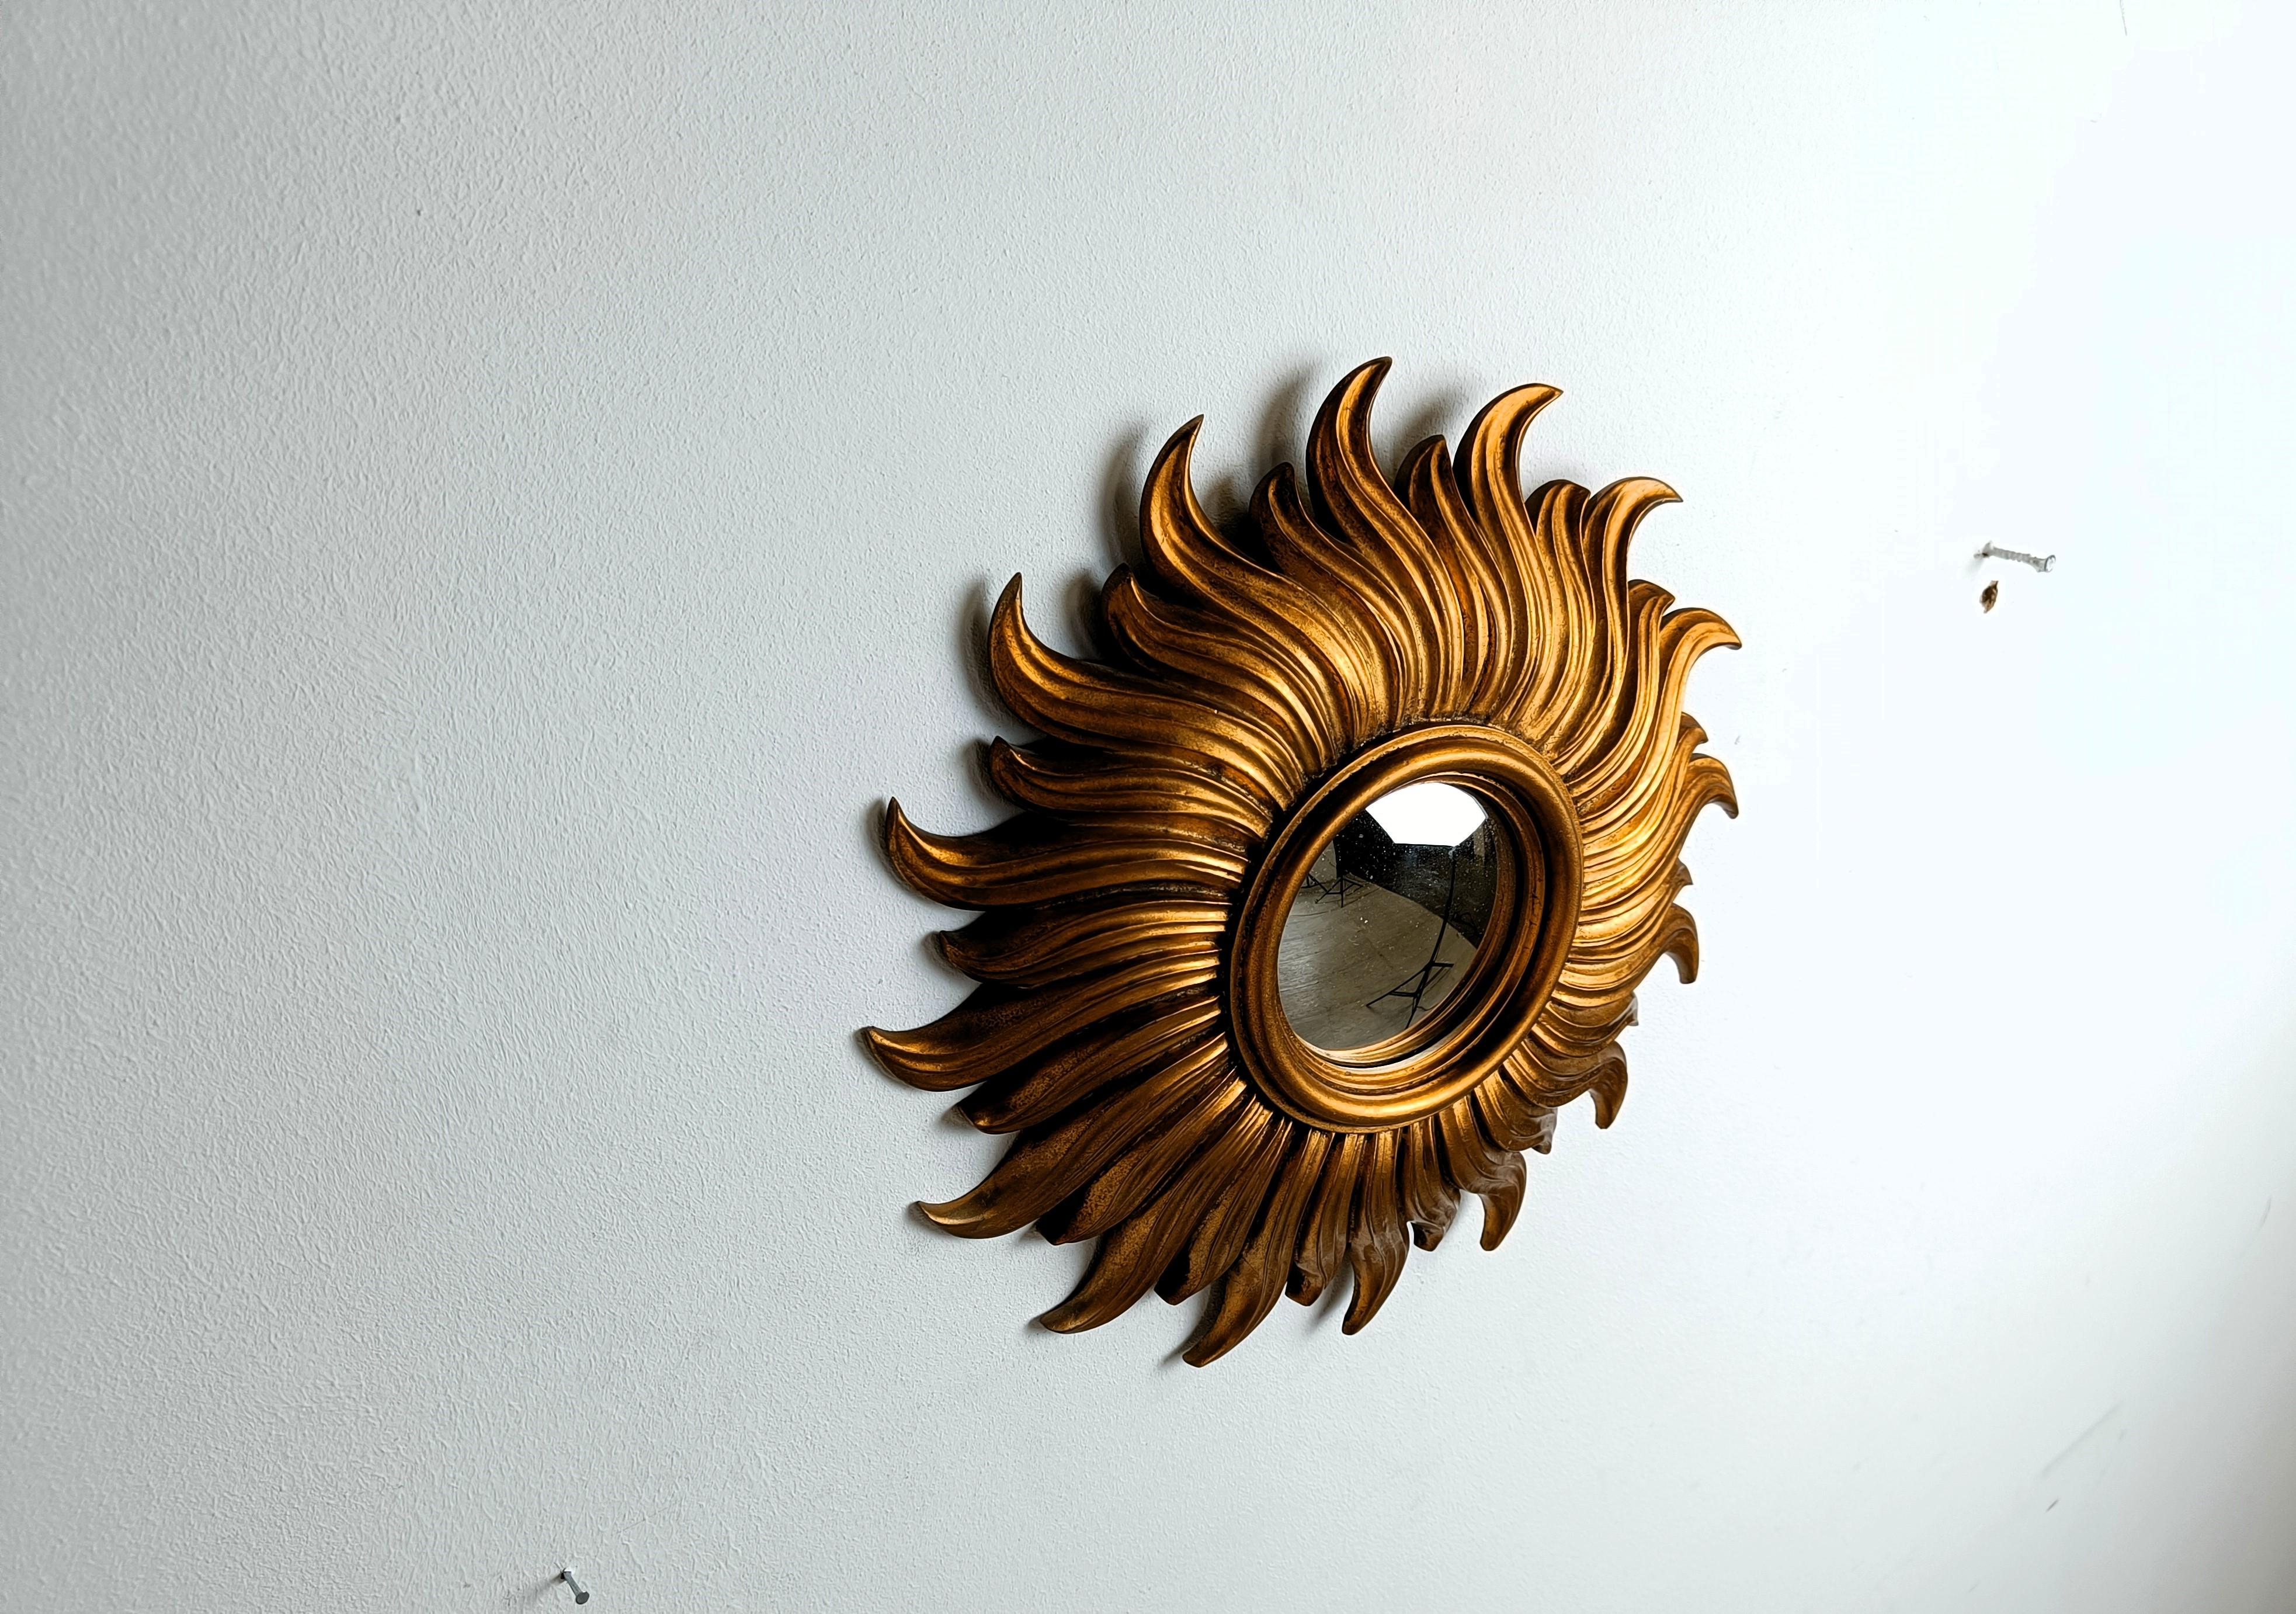 Miroir soleil en résine dorée avec verre miroir convexe.

Le miroir doré est en bon état.

Années 1960 - fabriqué en Belgique.

Dimensions :
Diamètre : 35 cm

Réf :  87456414

Référence : 1